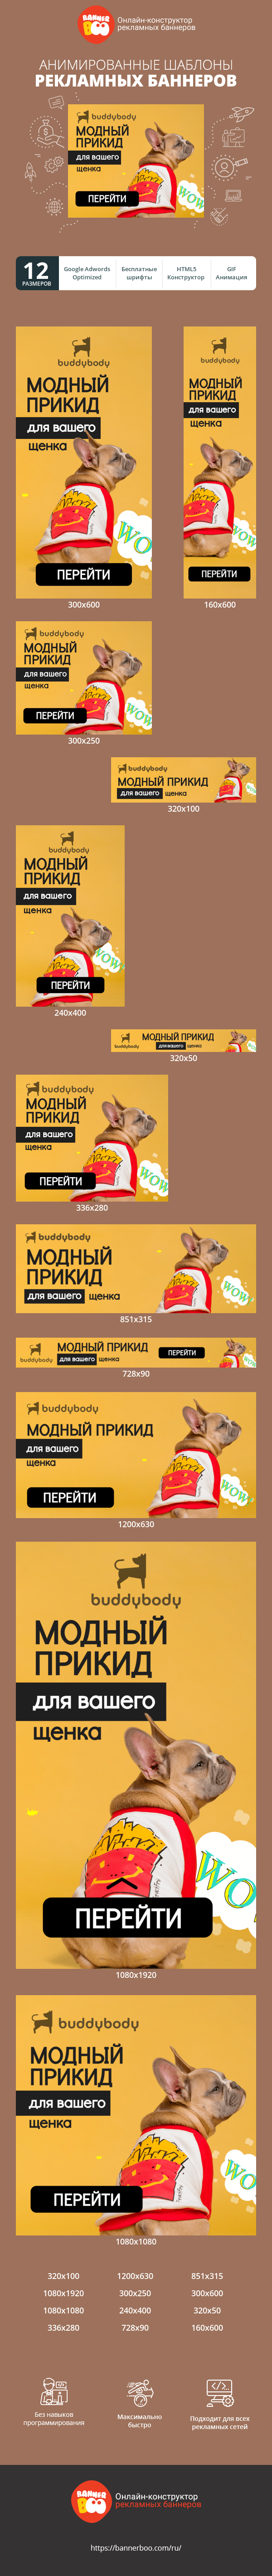 Шаблон рекламного баннера — Модный прикид для вашего щенка — зоомагазин